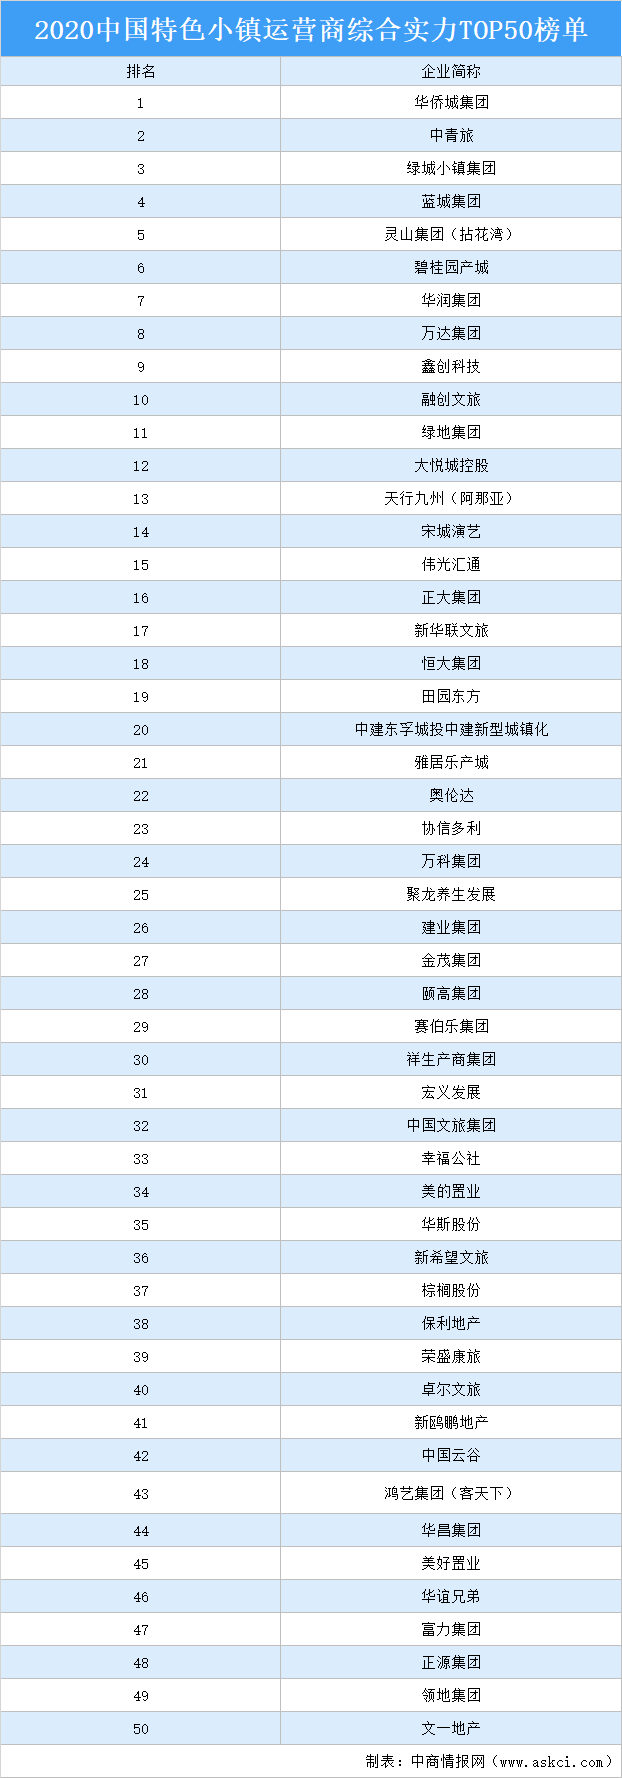 运营商排行榜_2021年中国产业新城运营商综合实力排行榜TOP10